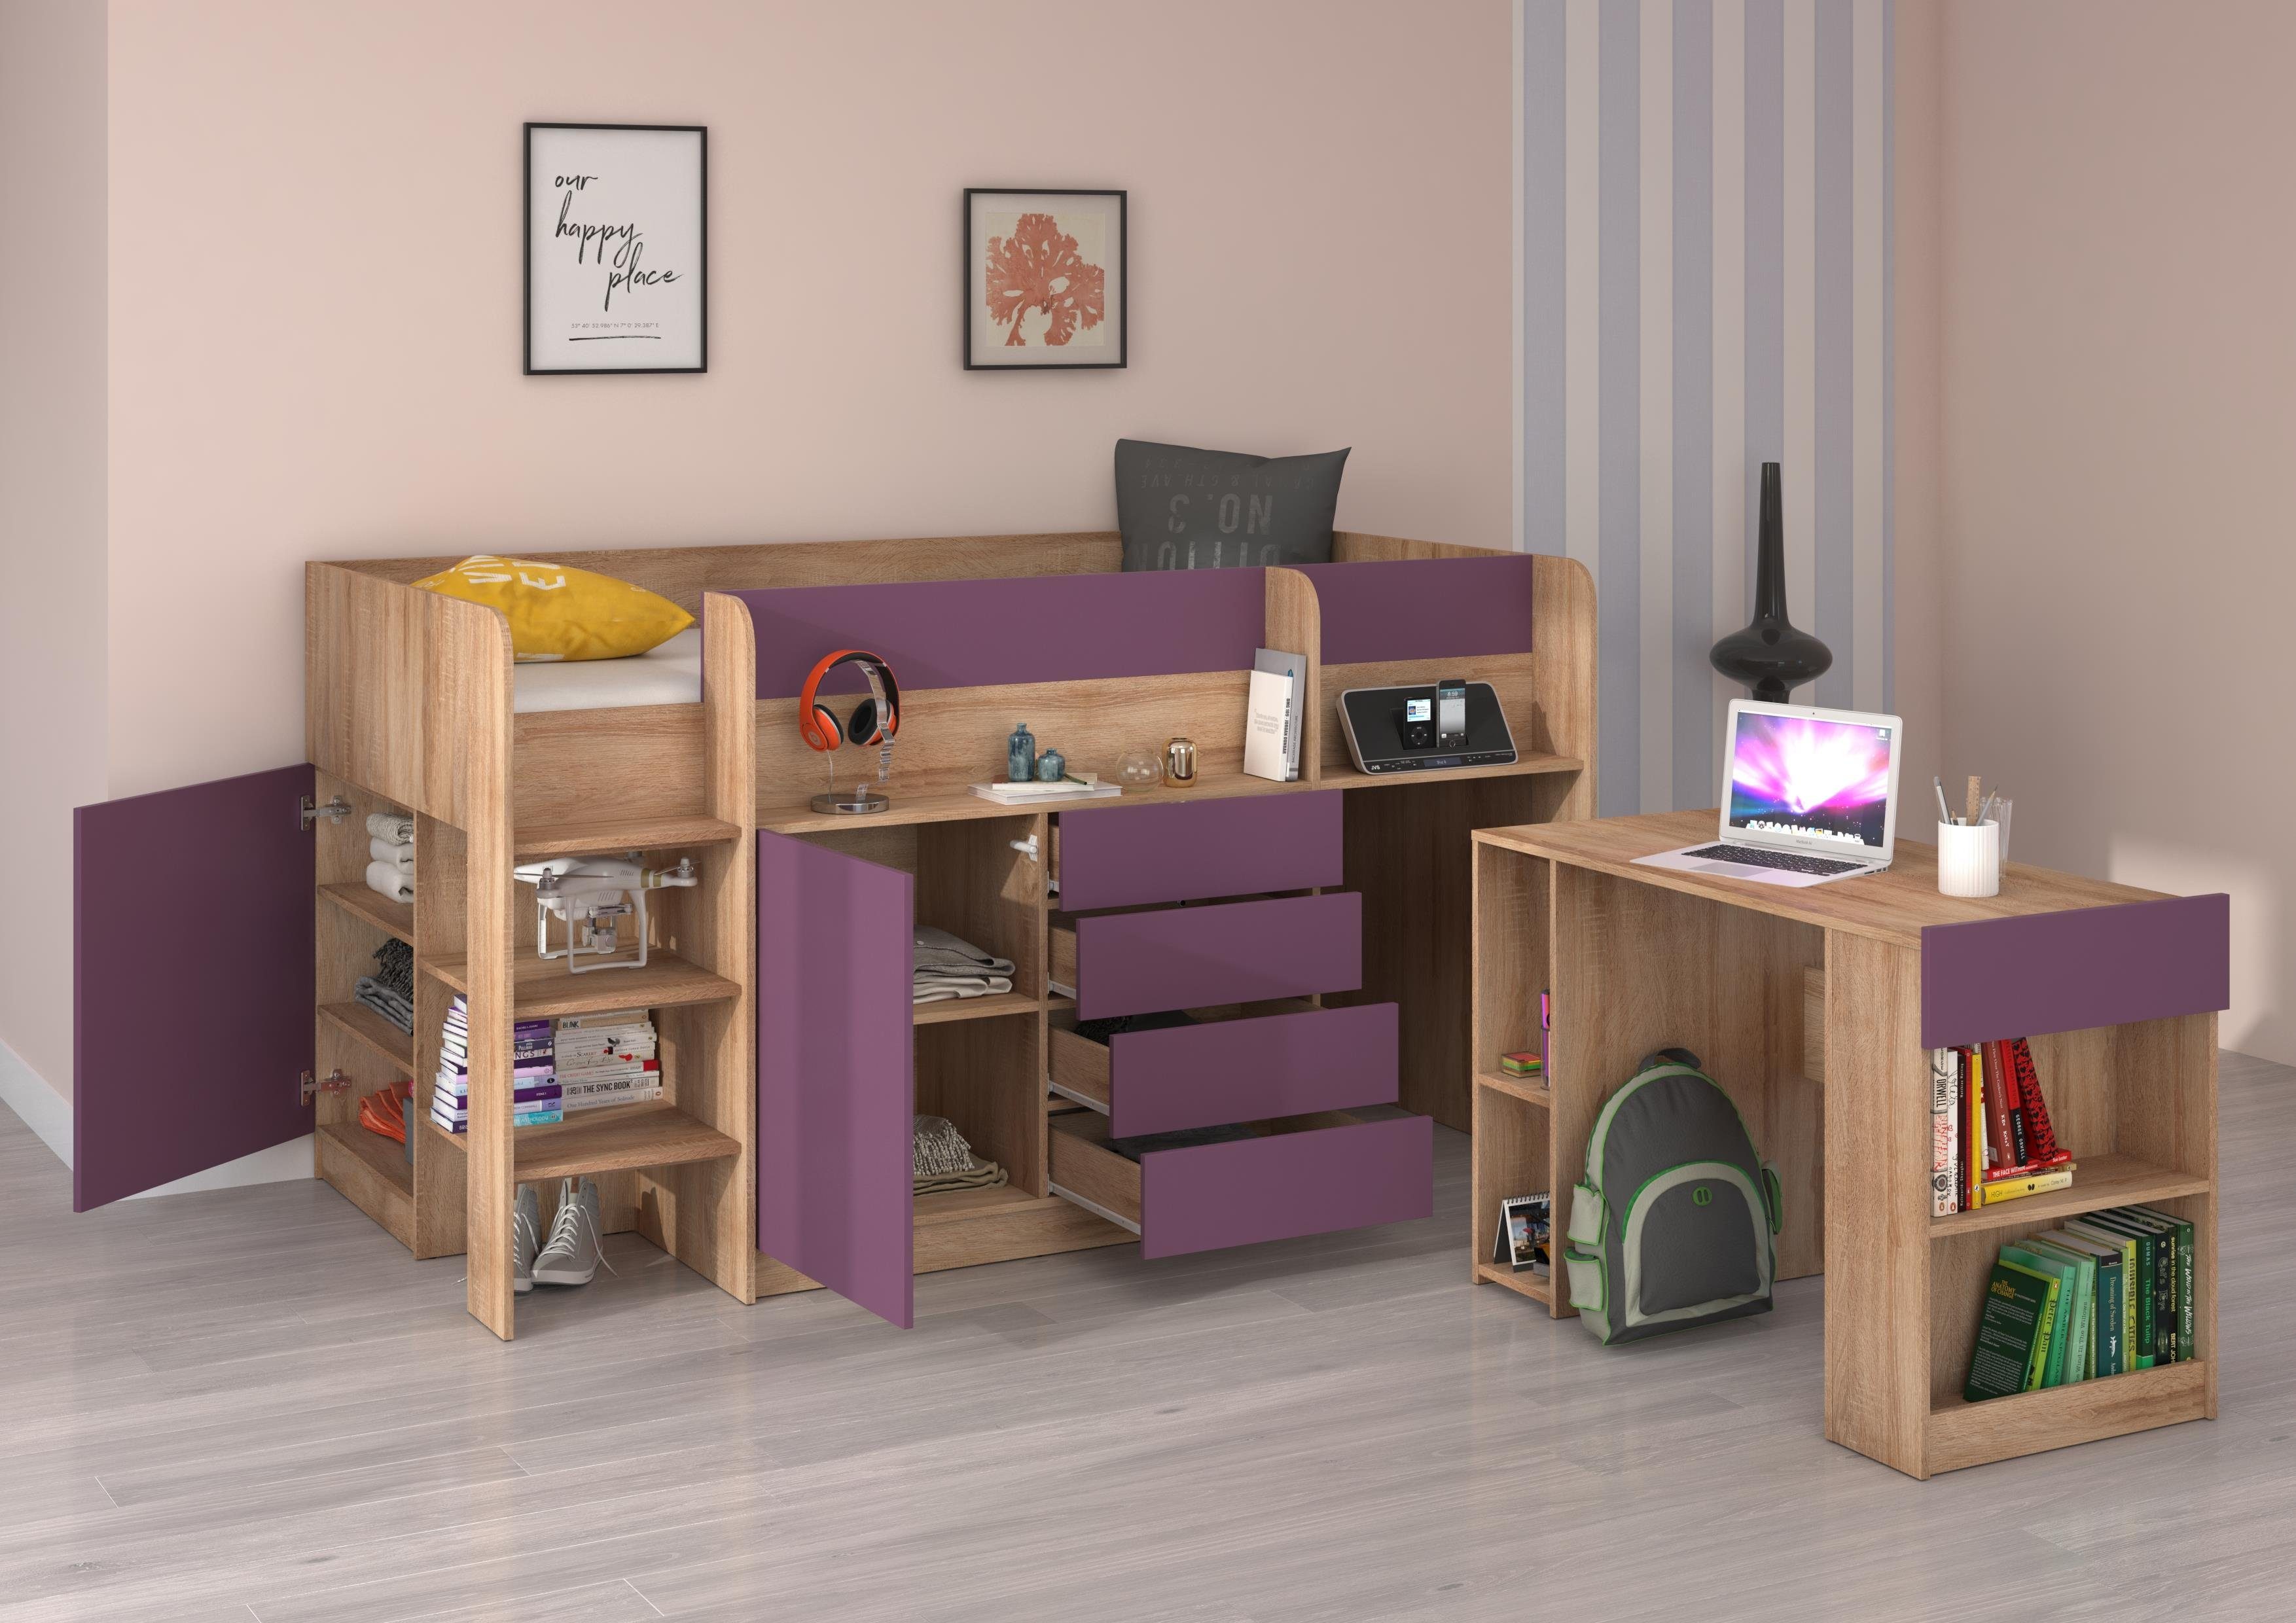 Schränken, Sonoma Breite Hochbett Schreibtisch und Eiche Regal Violett 204cm, Hochbett Sondrio mit und integrierten Domando